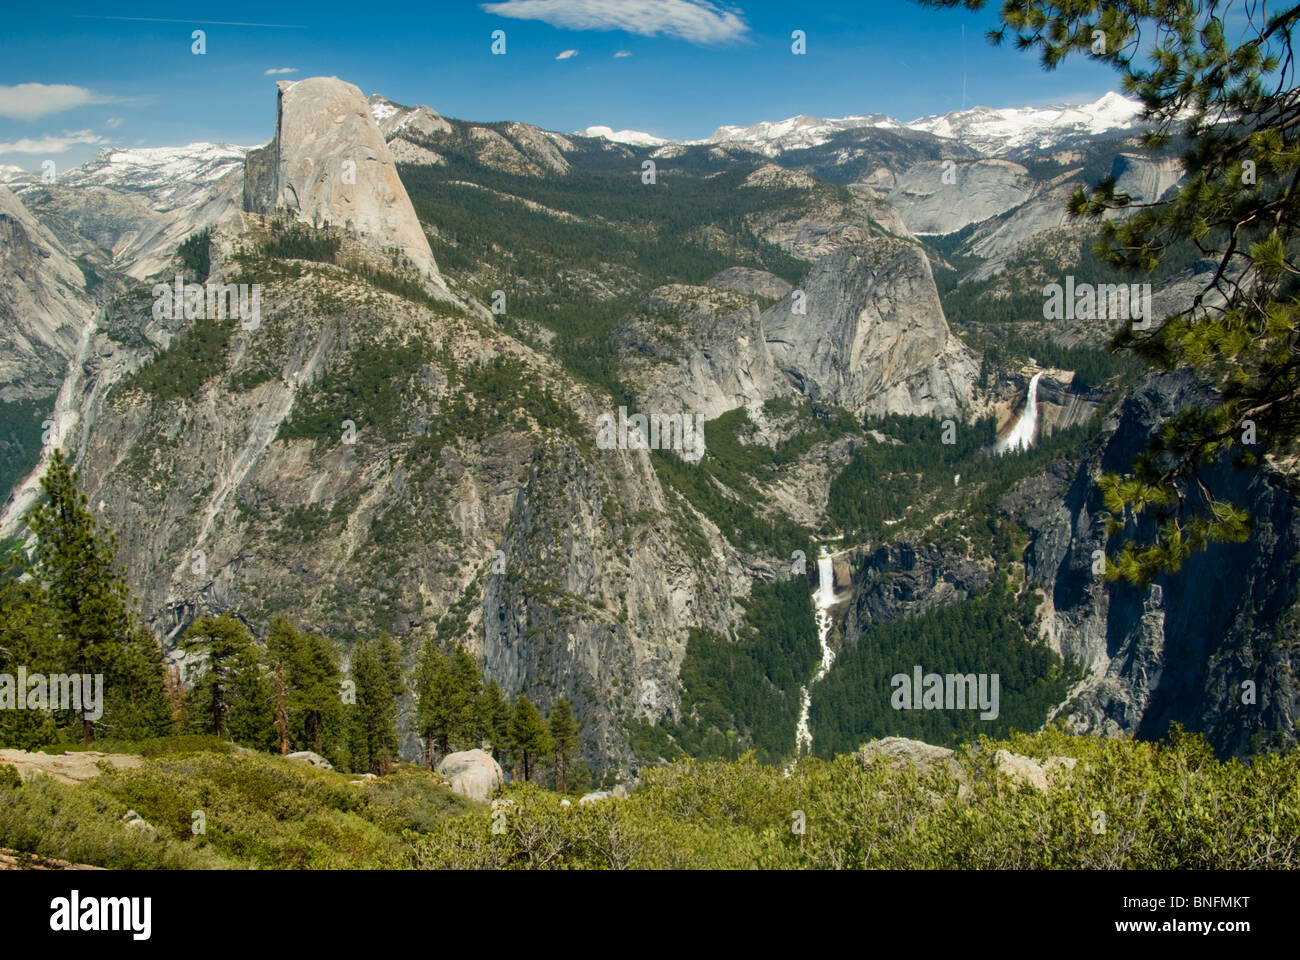 Californie, Yosemite National Park, Half Dome Tower au-dessus de la vallée Yosemite, détail de bord m, 8842 pieds, Nevada Falls s'écoule dans l'automne Vernal Banque D'Images